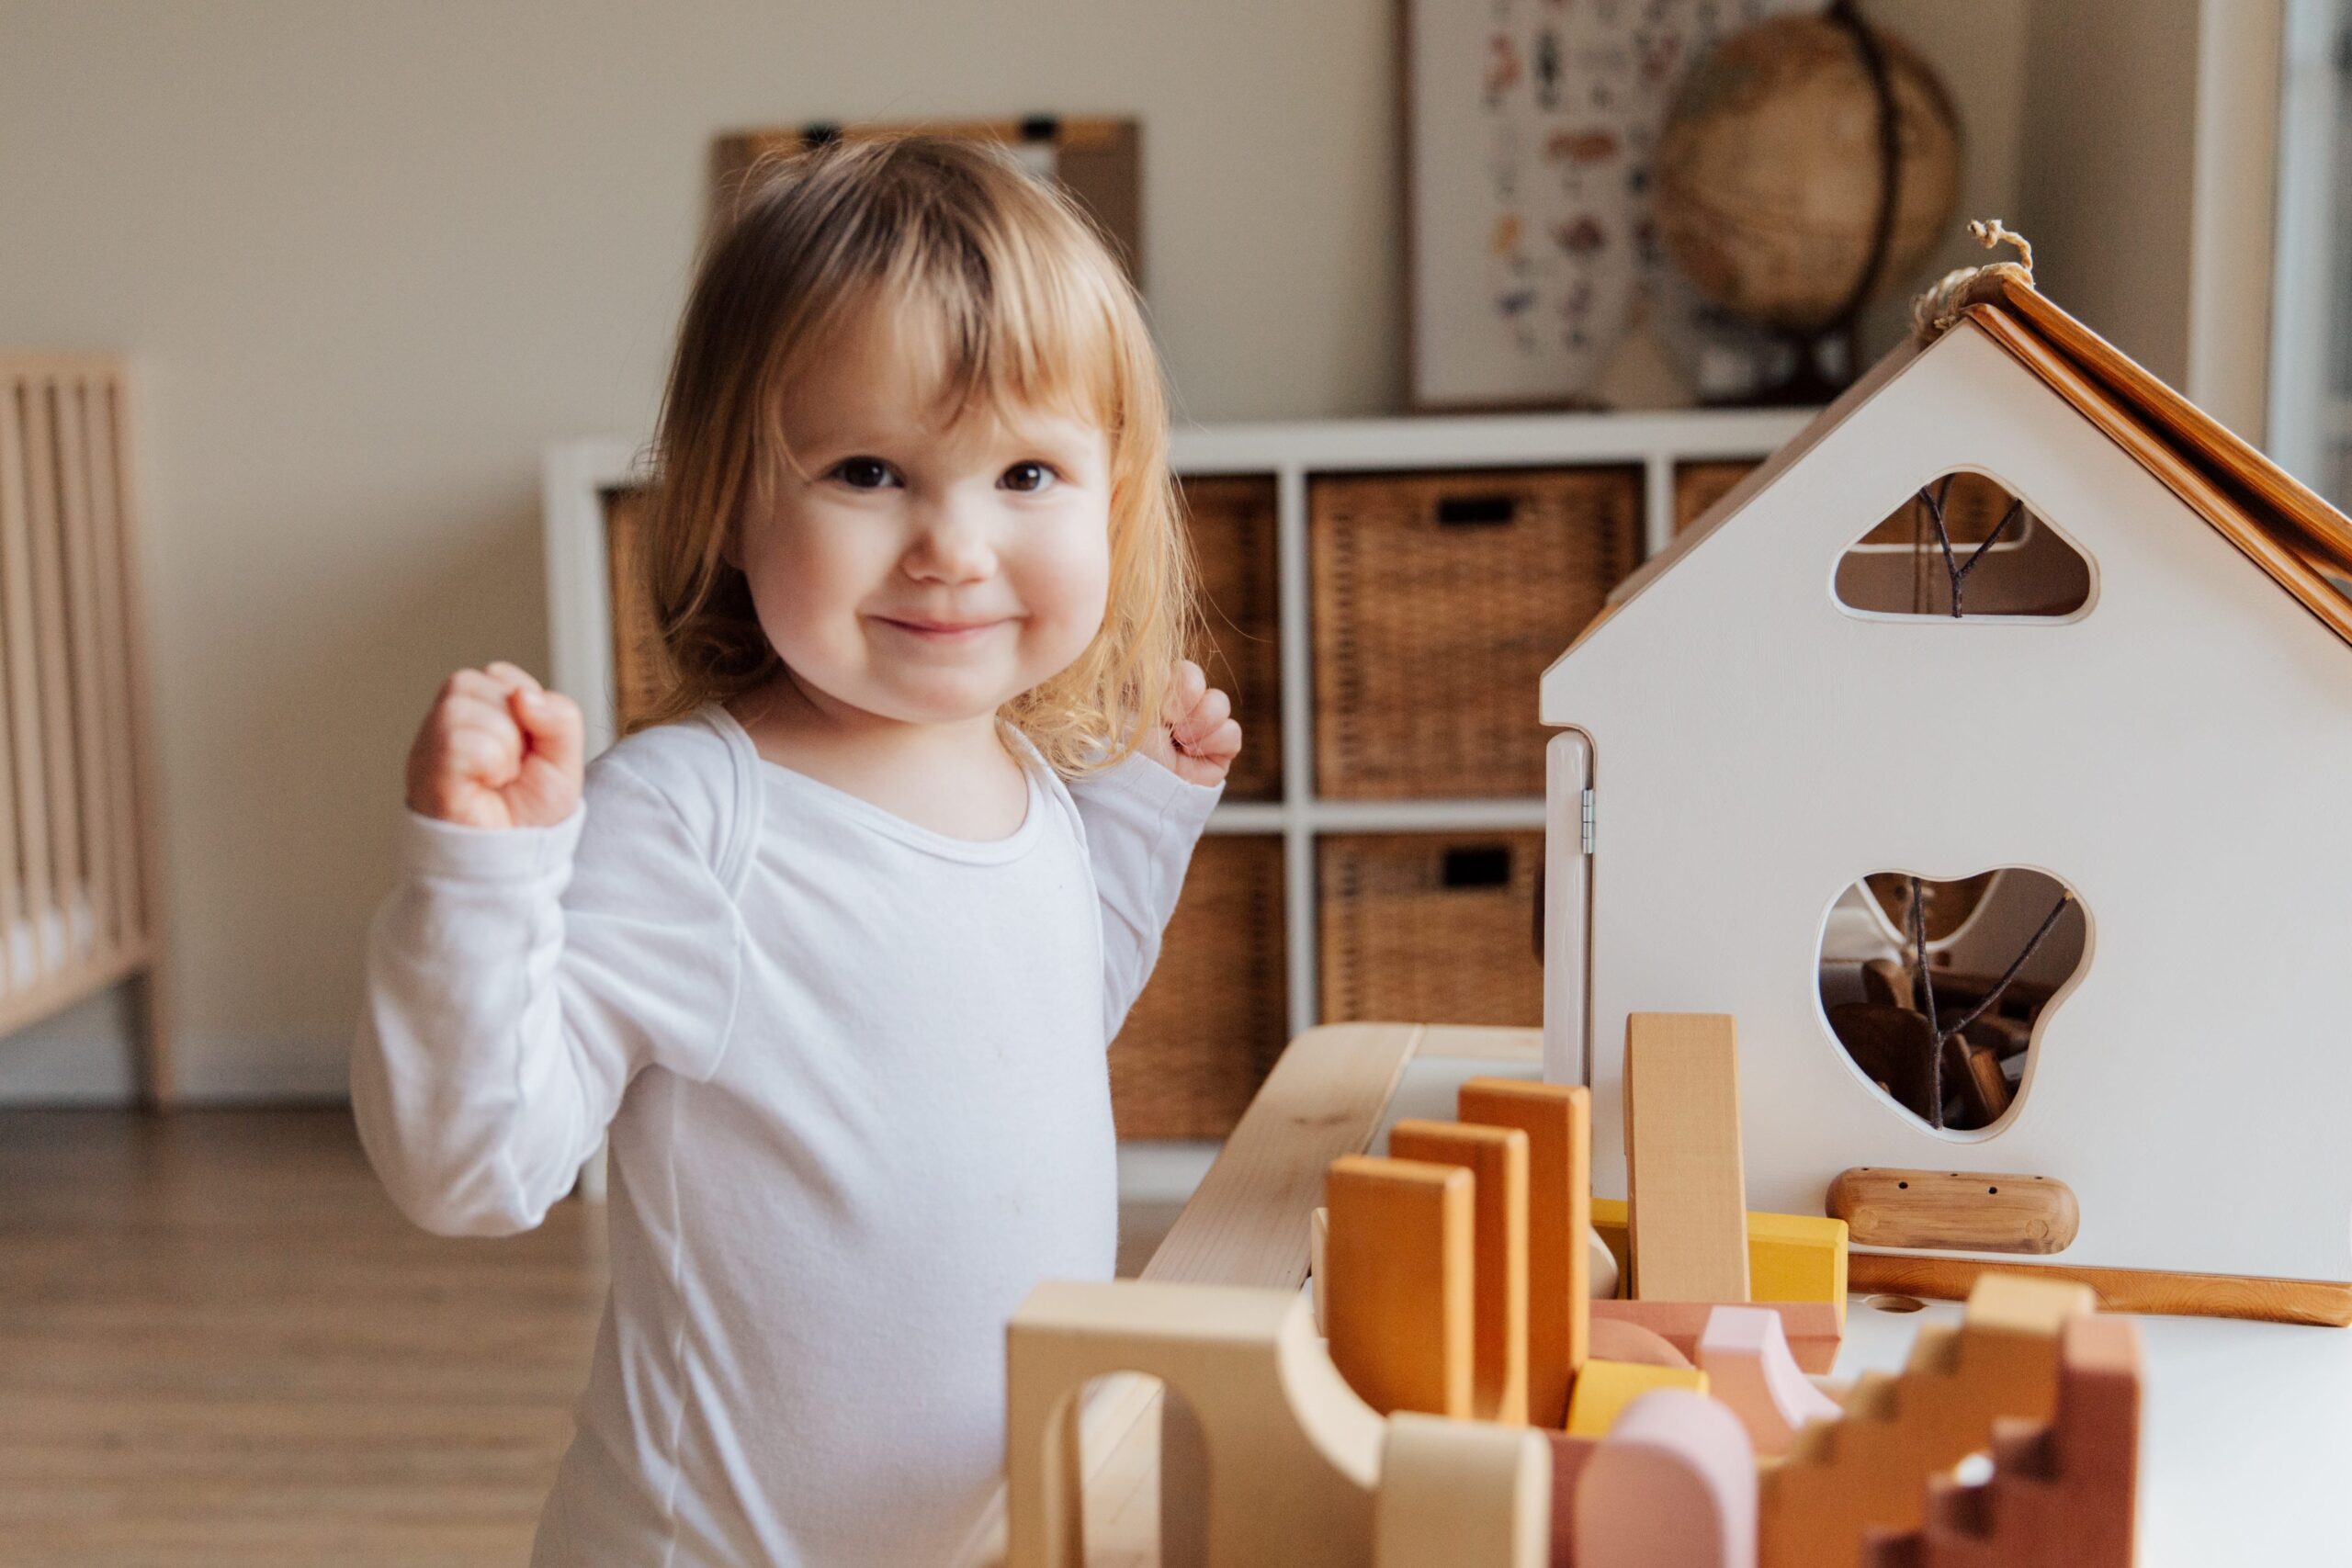 Juguetes Montessori para los niños según su edad - Etapa Infantil